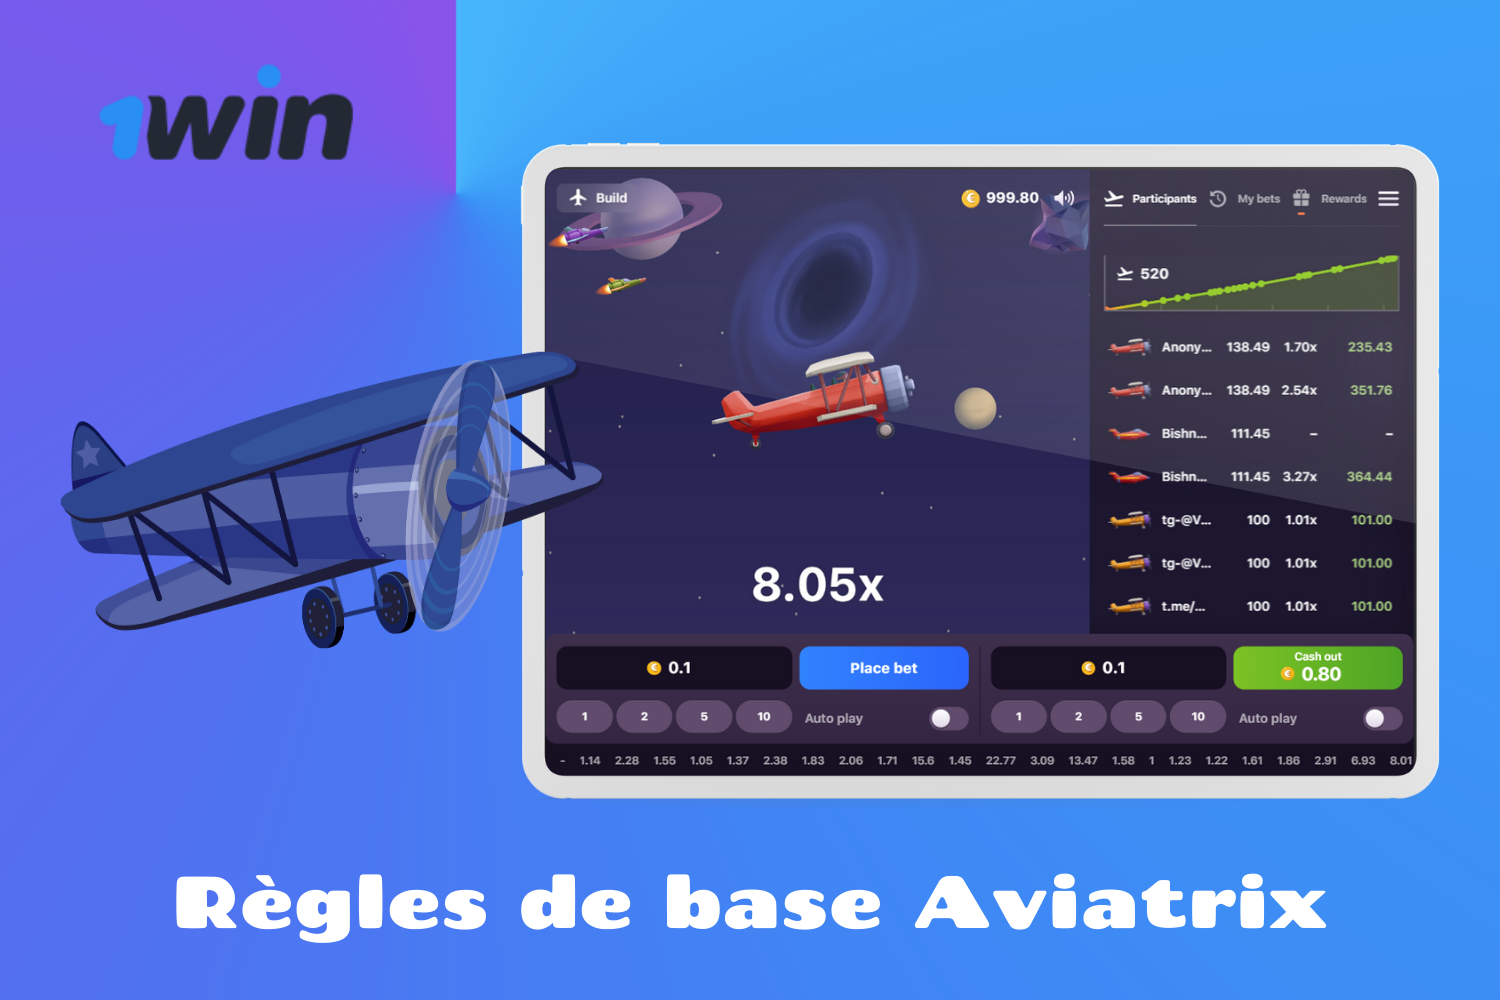 1win Aviatrix est un jeu aux règles simples et aux gains faciles qui attire un grand nombre de joueurs du Burkina Faso.